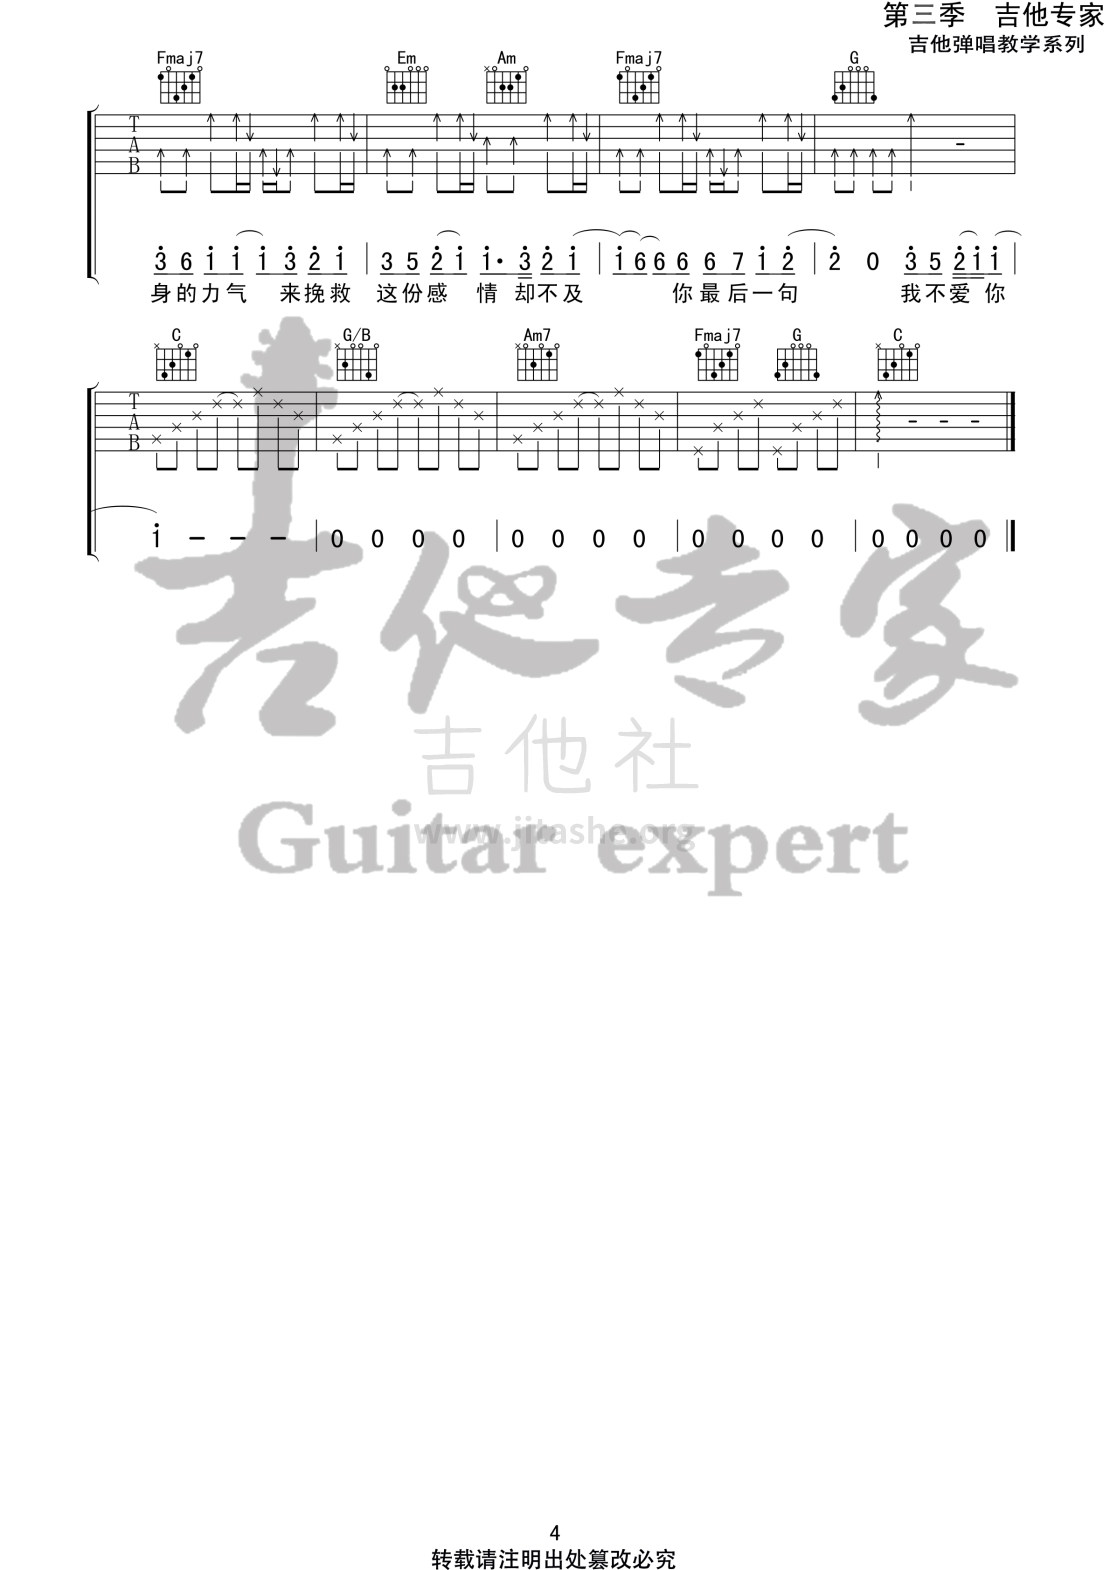 最 (音艺吉他专家弹唱教学:第三季第16集)吉他谱(图片谱,弹唱)_刘大壮_最4 第三季第十六集.jpg